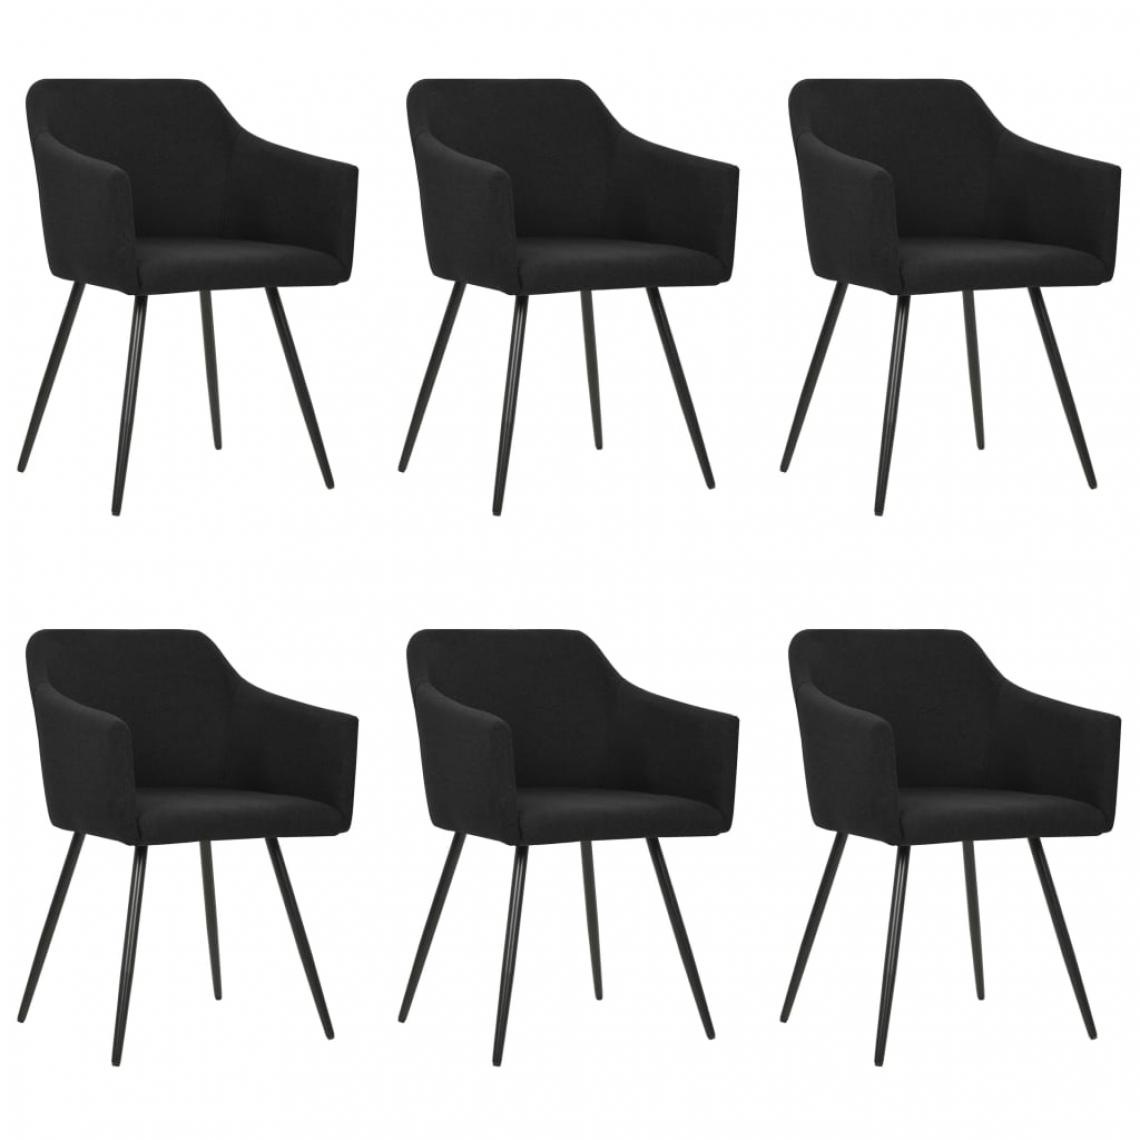 Icaverne - Chic Fauteuils et chaises Tbilissi Chaises de salle à manger 6 pcs Noir Tissu - Chaises